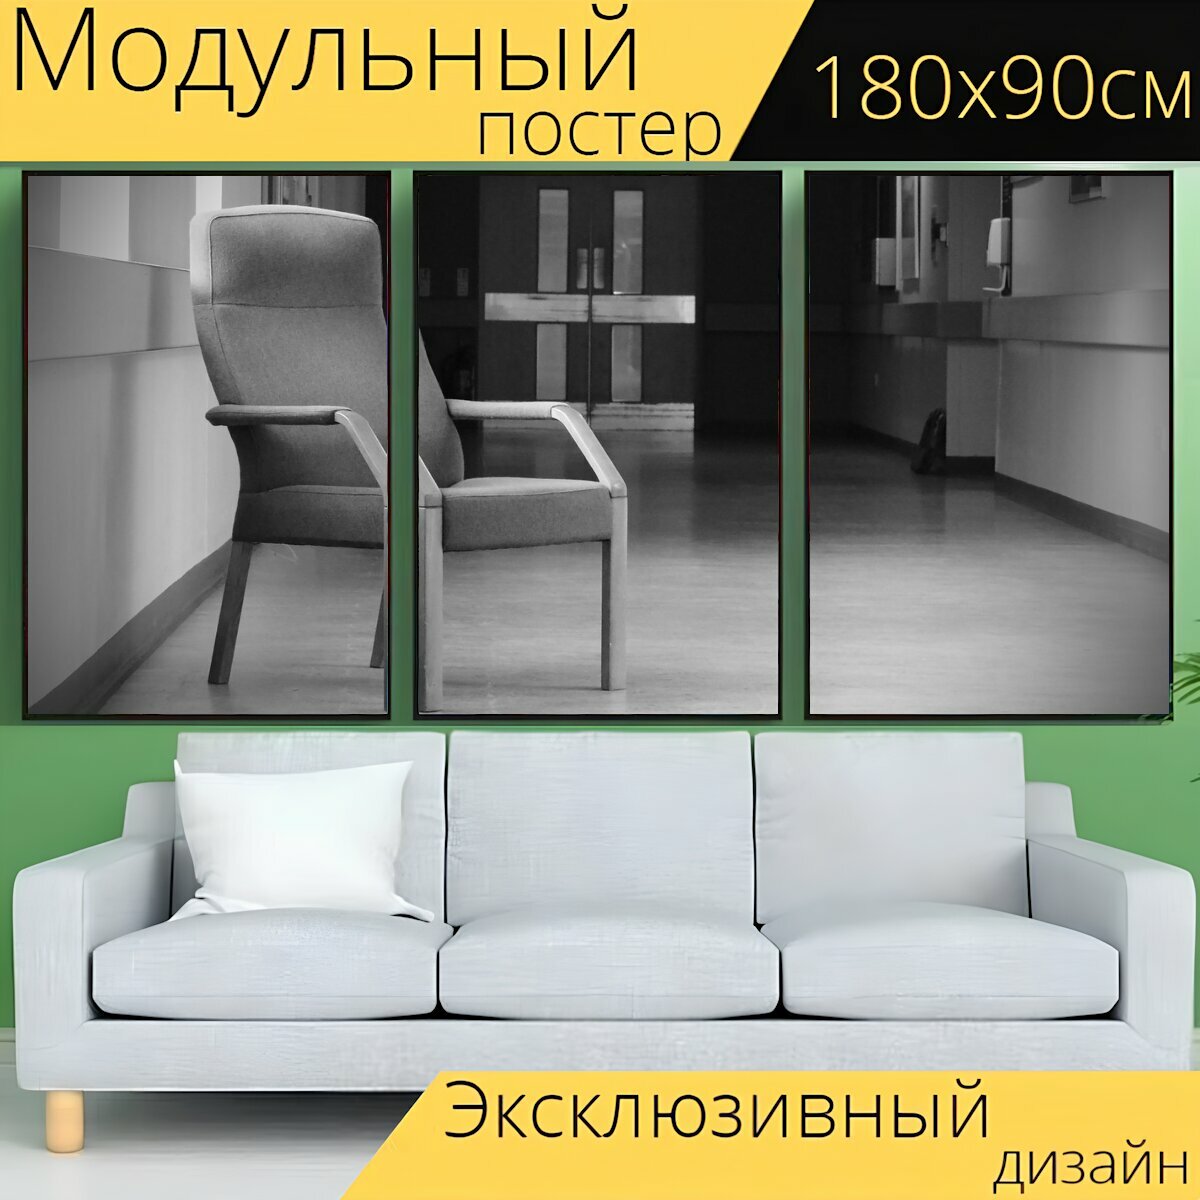 Модульный постер "Стулья, стул, зал" 180 x 90 см. для интерьера